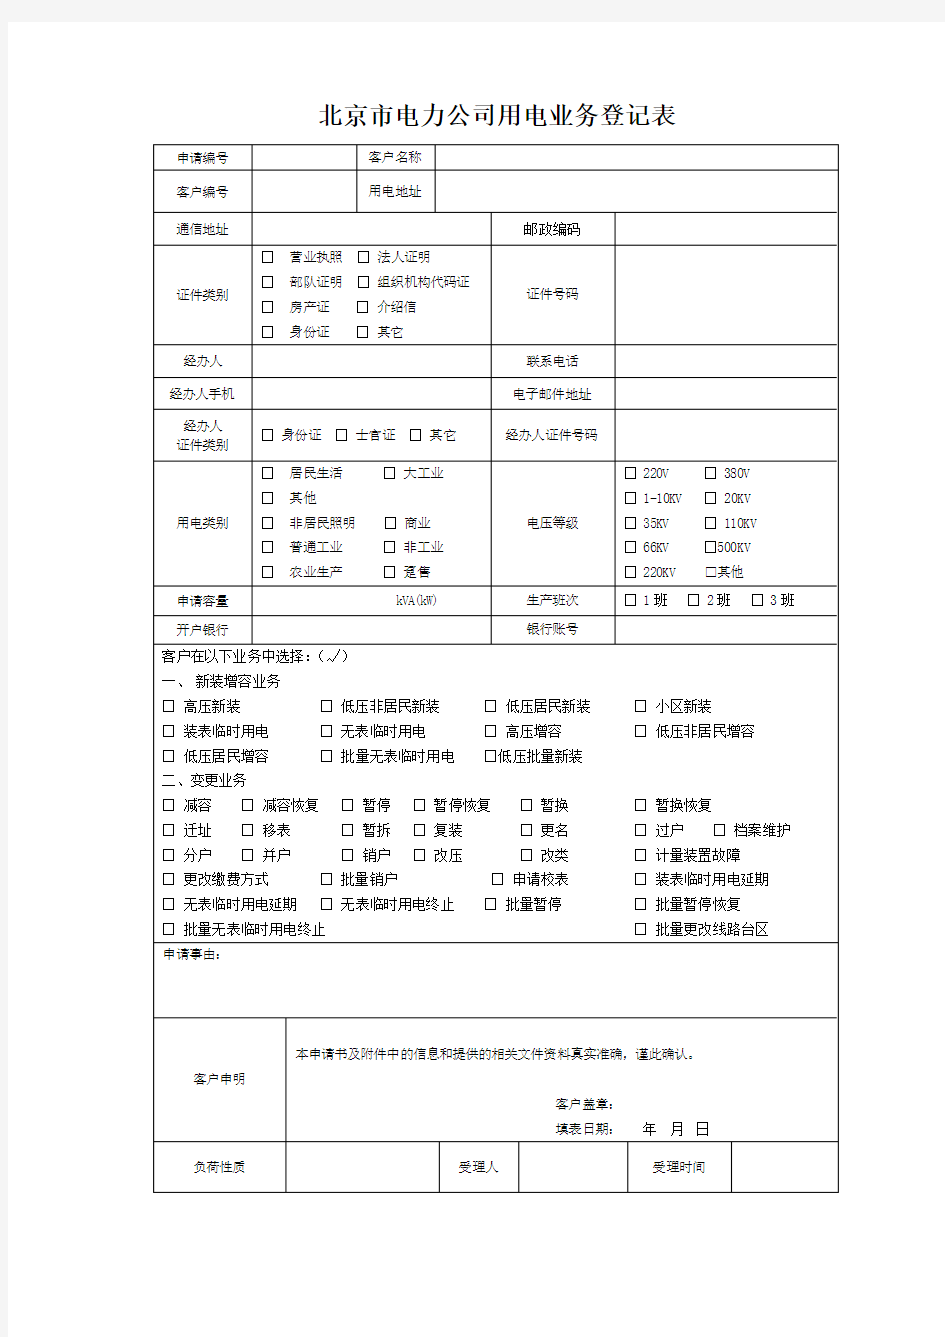 北京市电力公司用电业务登记表